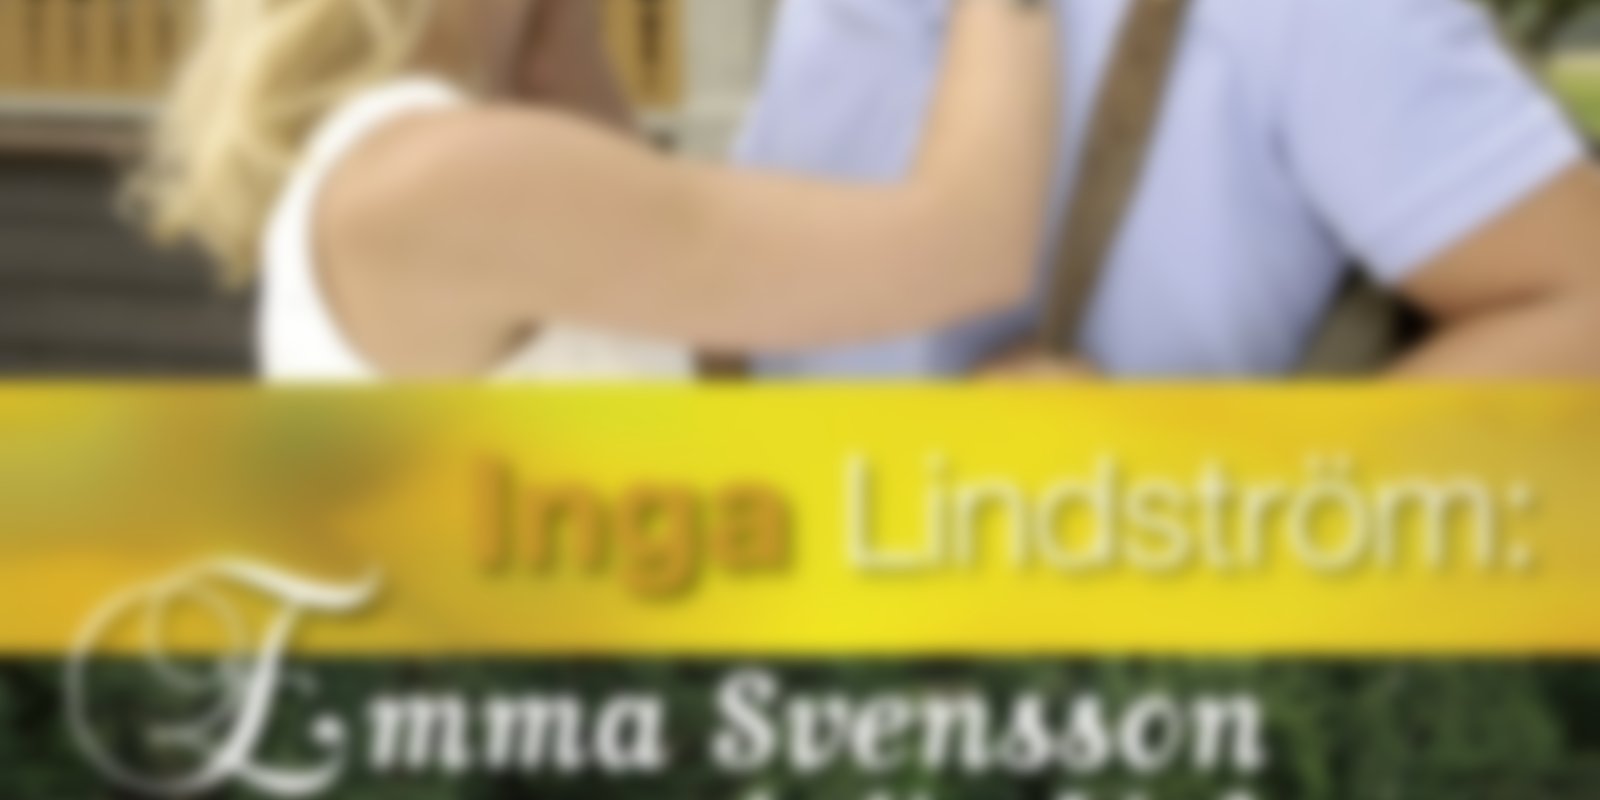 Inga Lindström - Emma Svennson und die Liebe